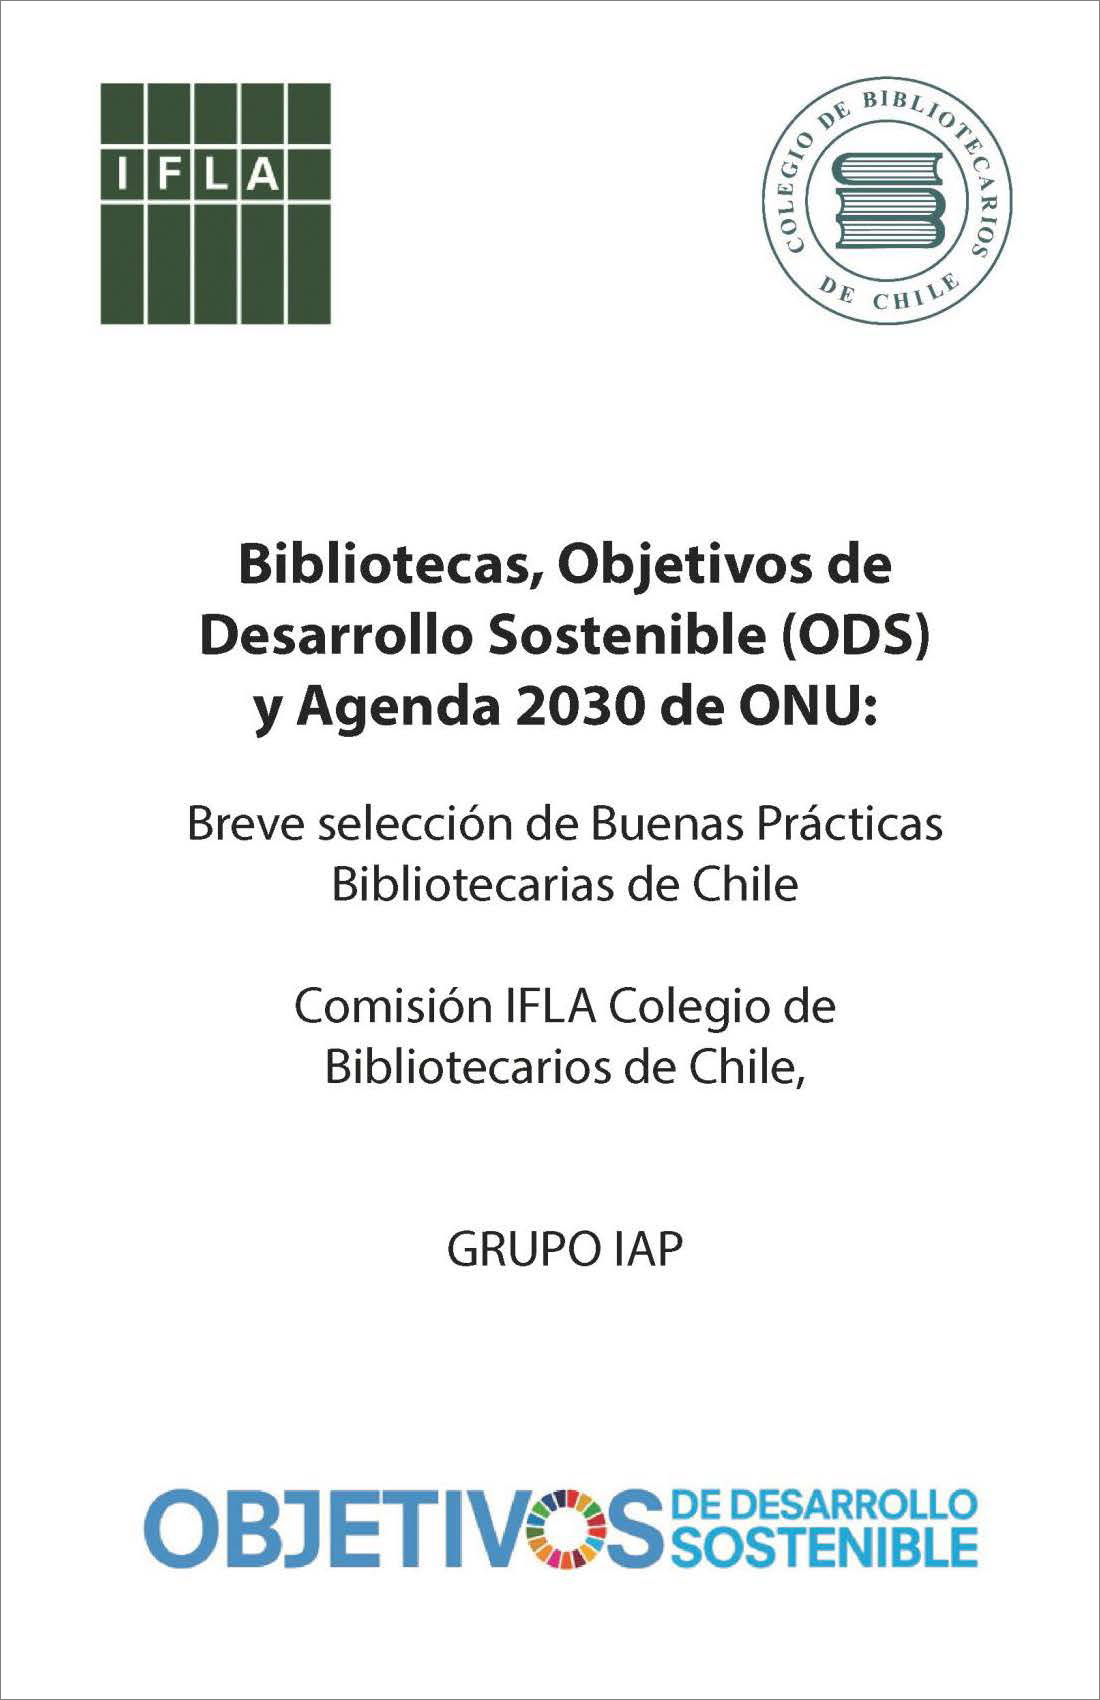 Bibliotecas, Objetivos de Desarrollo Sostenible (ODS) y Agenda 2030 ONU: Breve SelecciÃ³n de Buenas PrÃ¡cticas Bibliotecarias de Chile